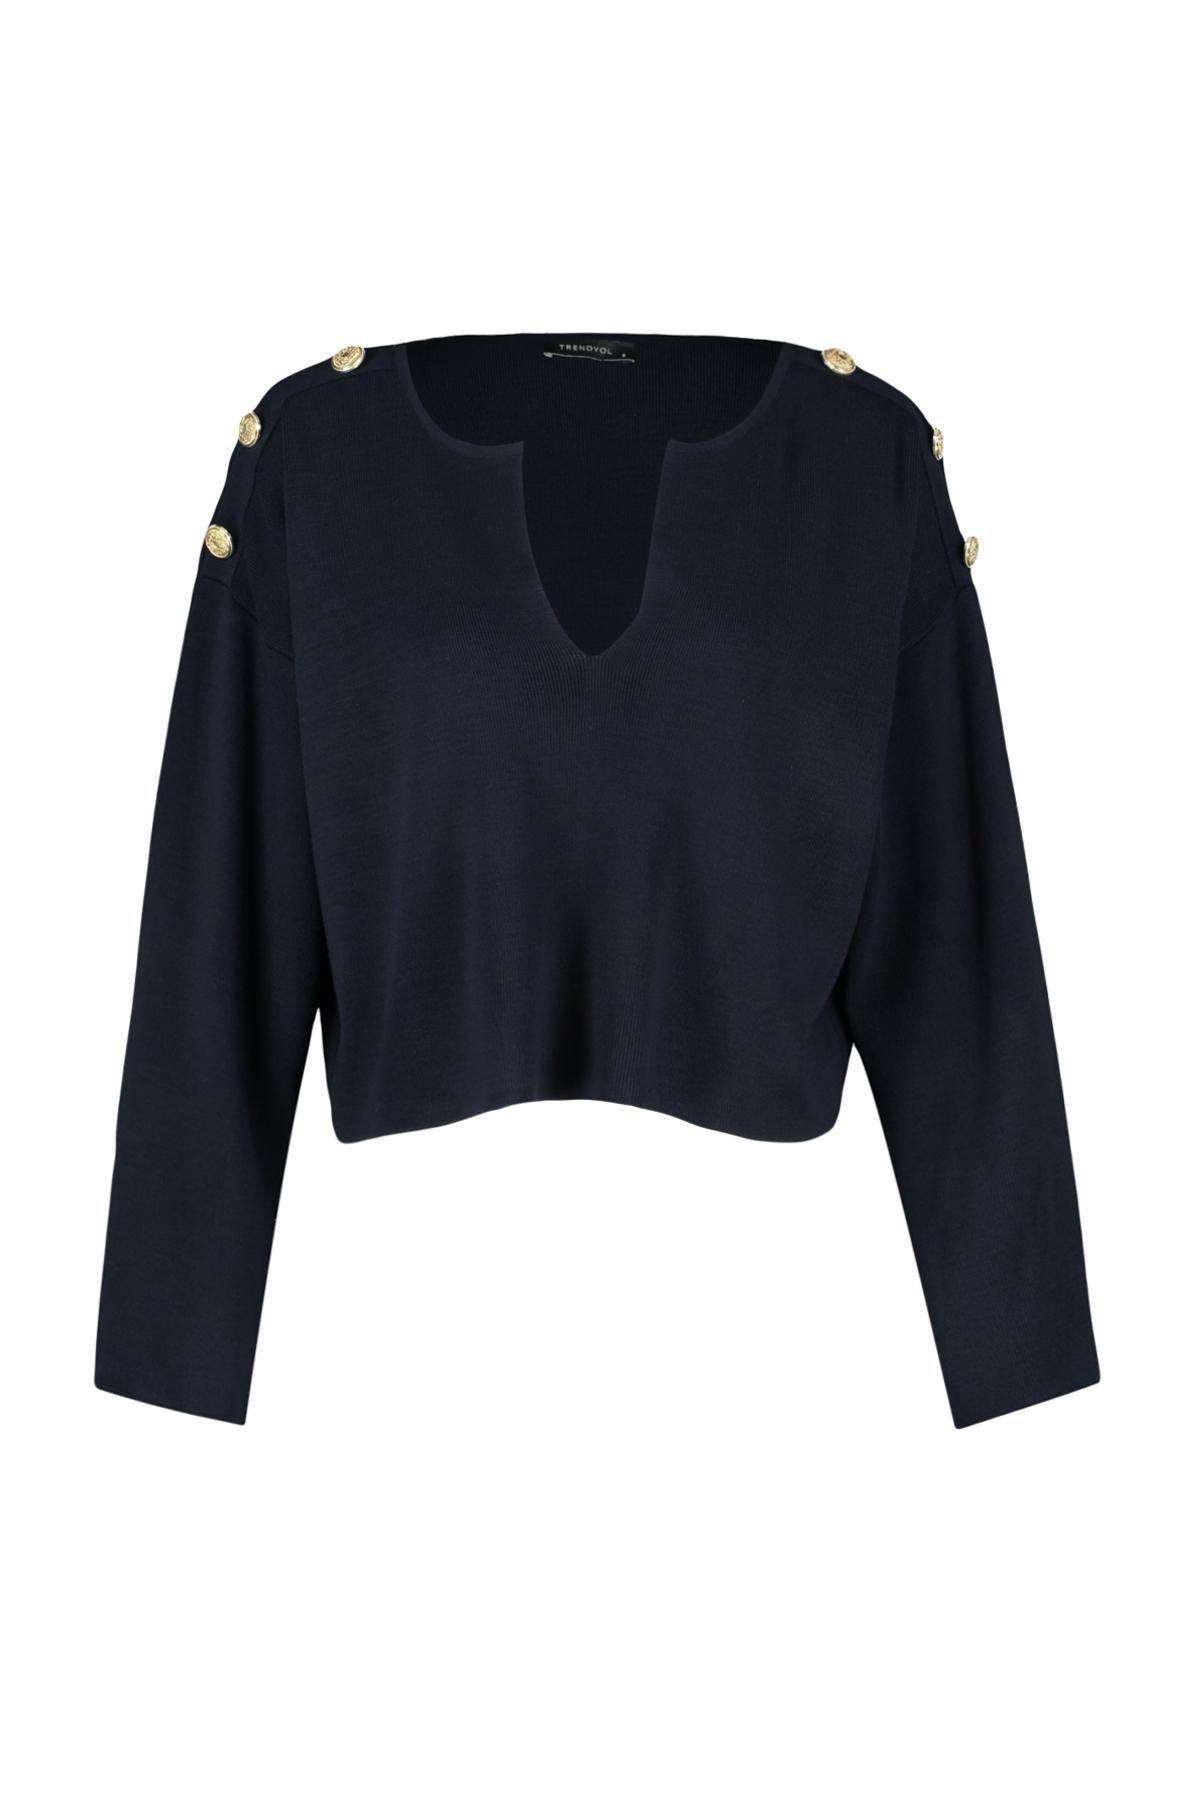 Trendyol - Navy Buttons Knitwear Sweater